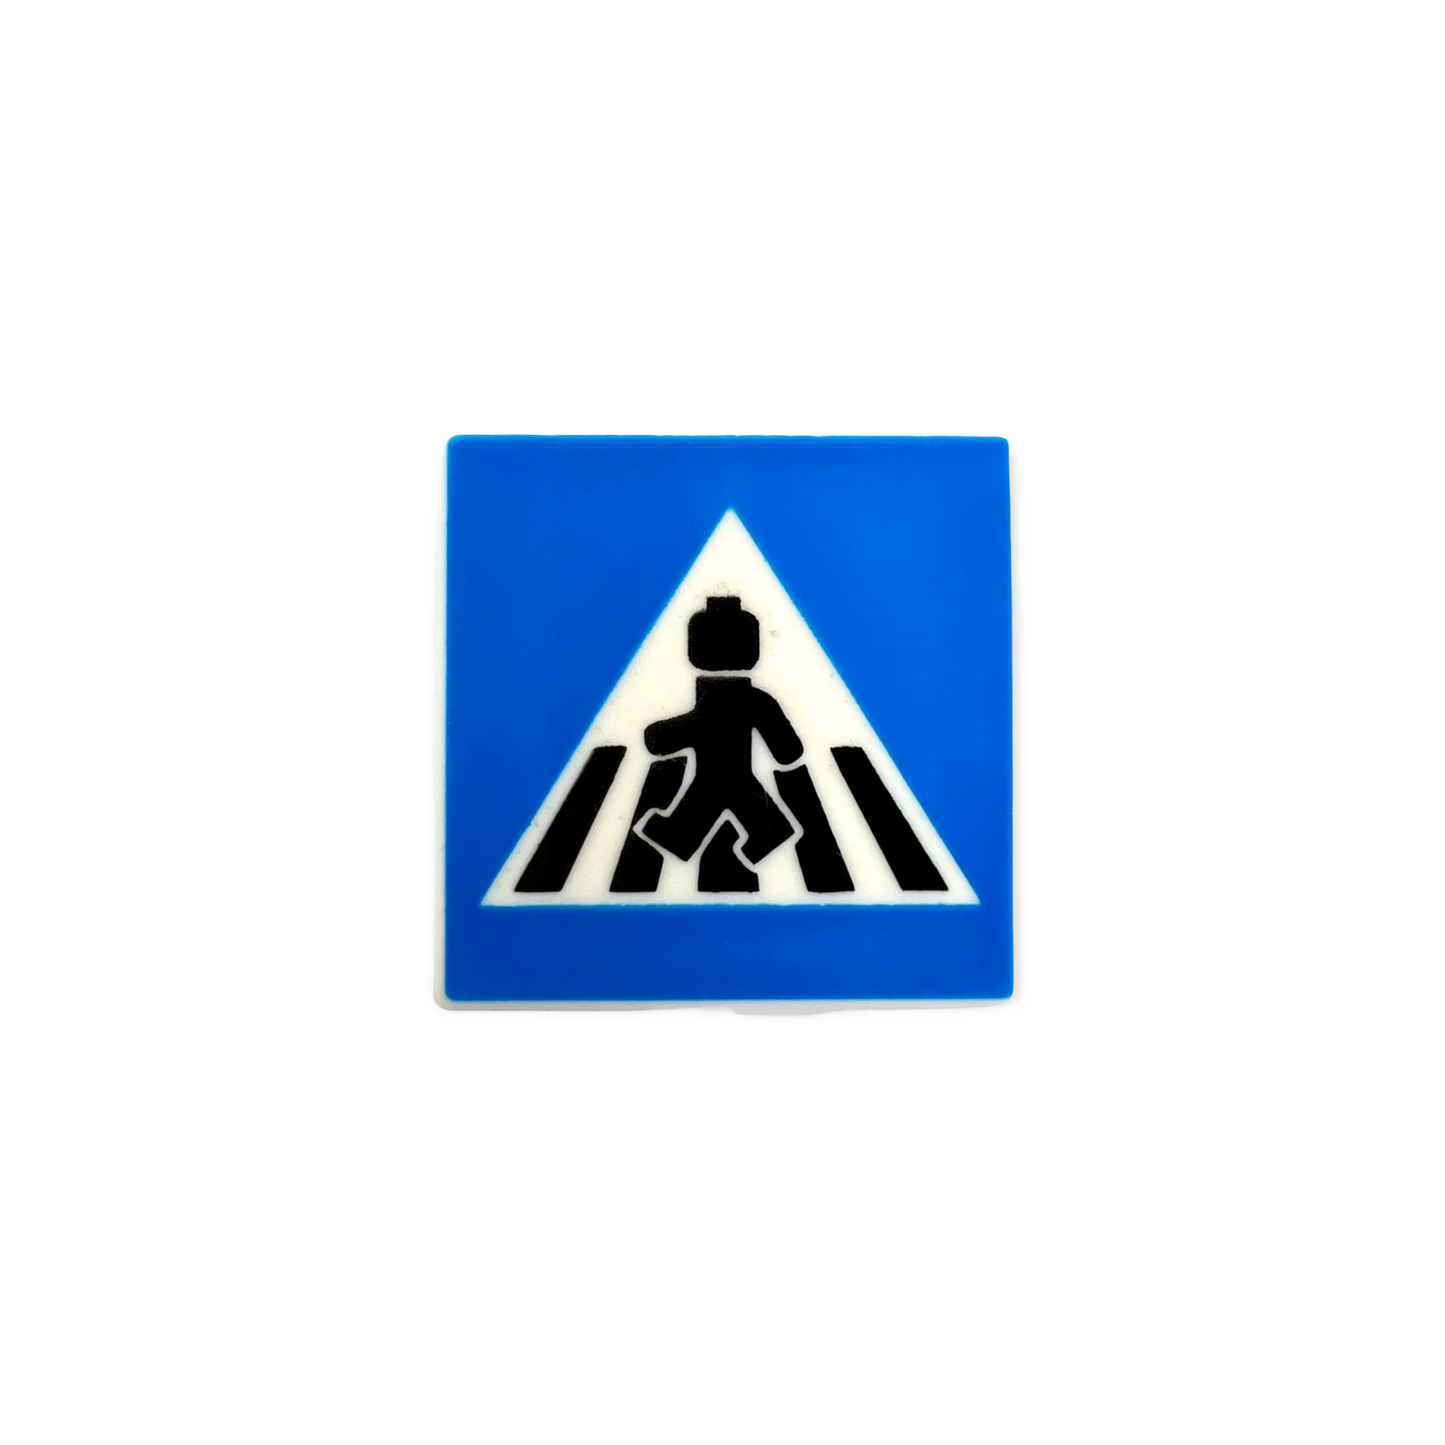 Verkehrszeichen - Zebrastreifen